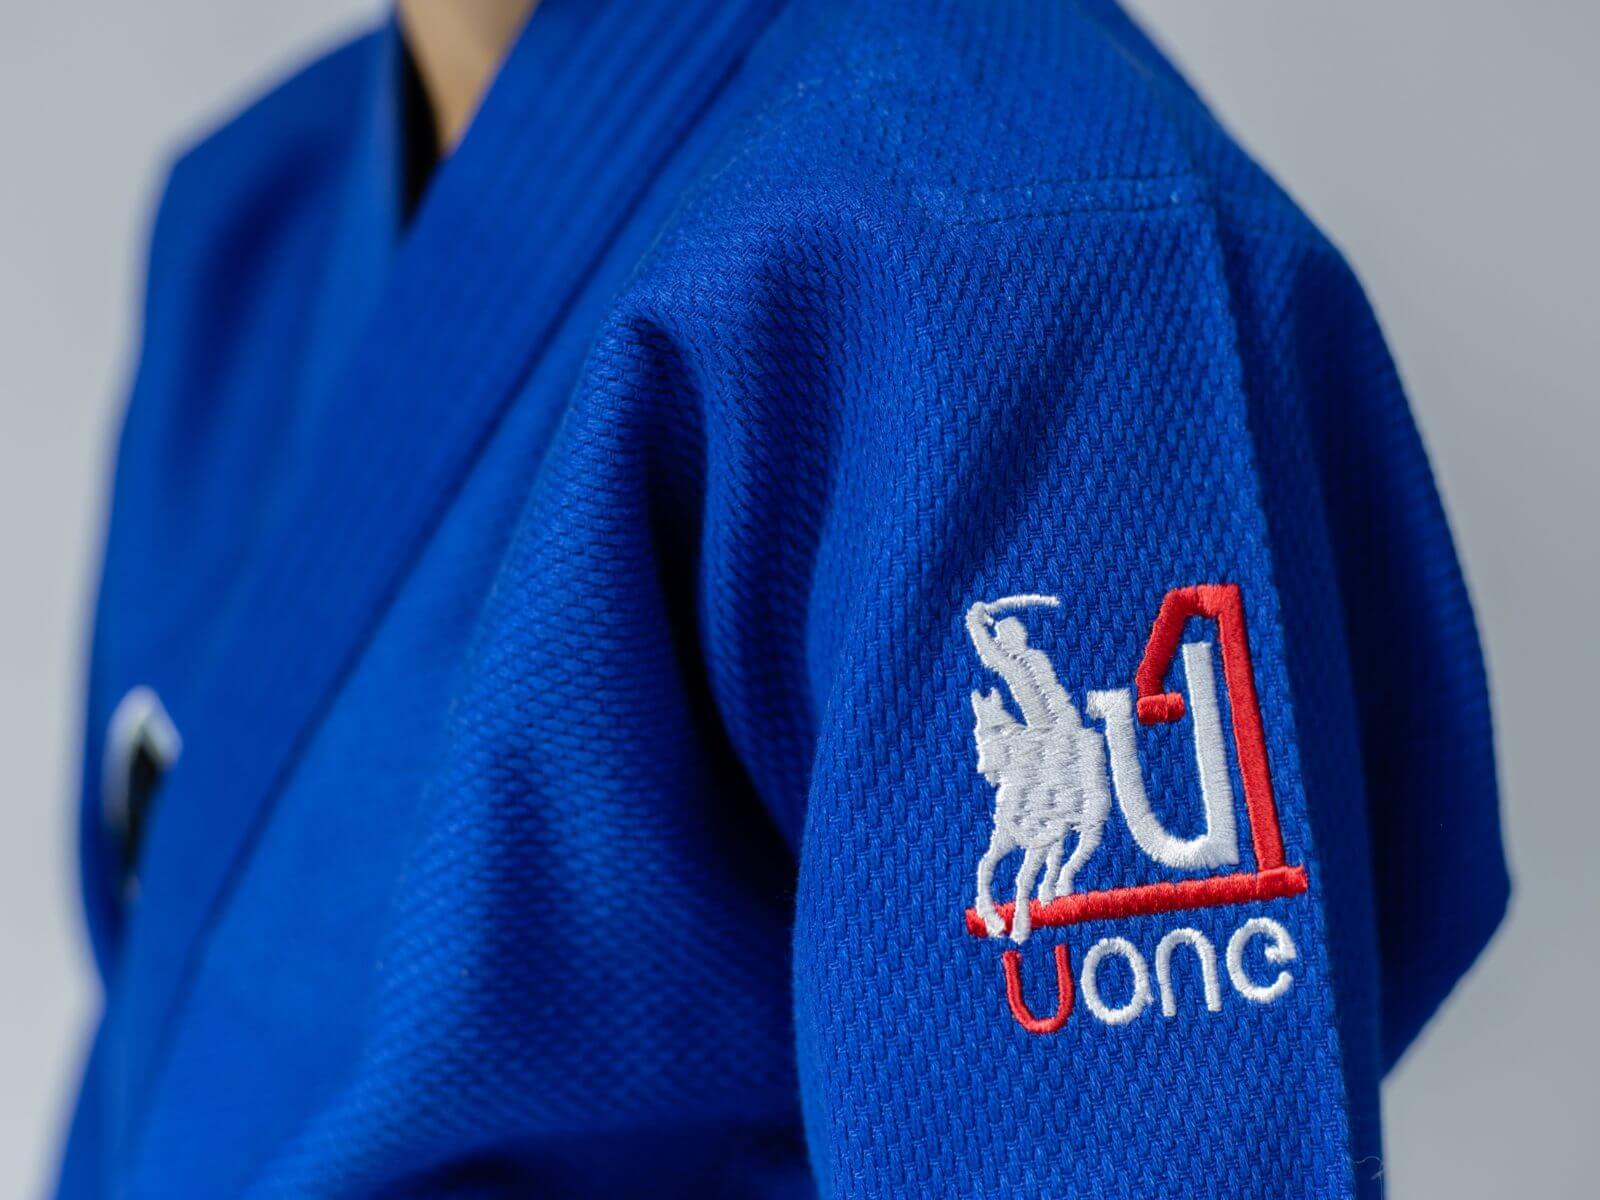 Judoga dla dzieci niebieska marki Uone